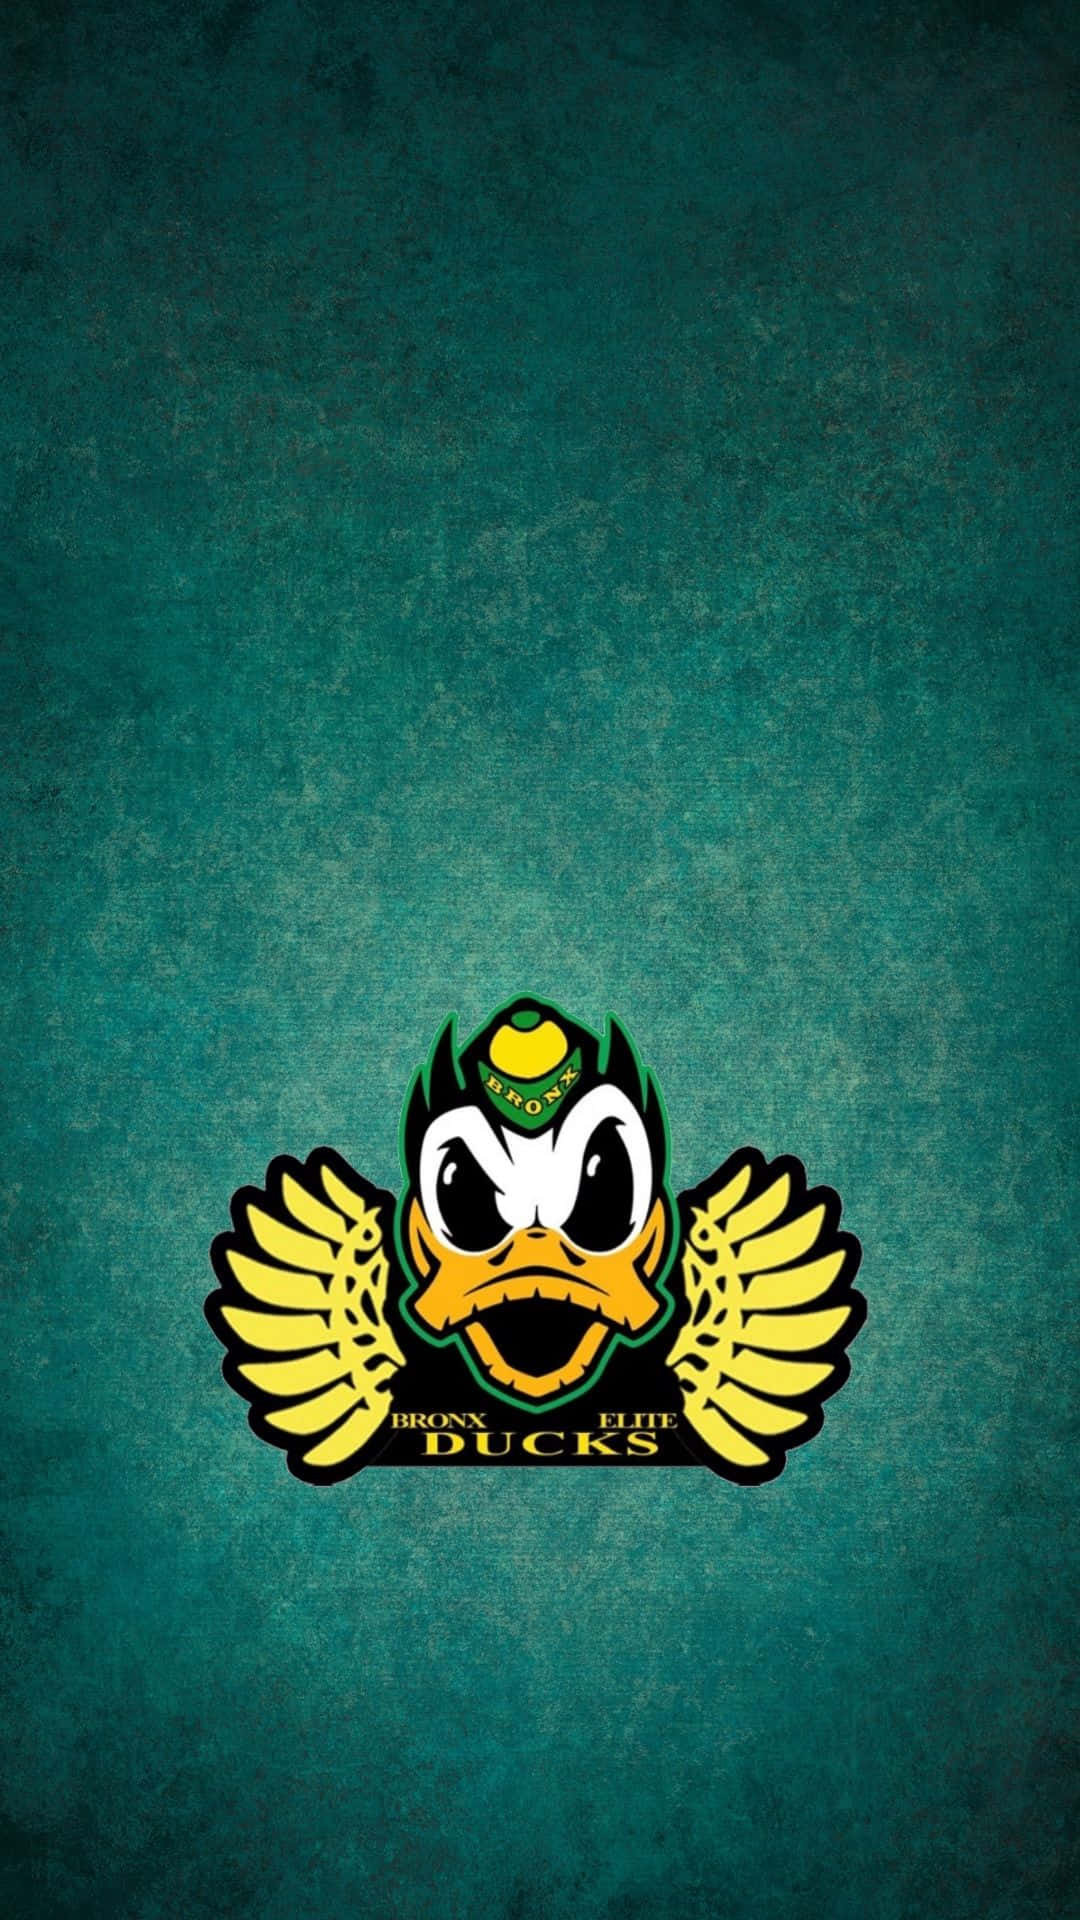 Oregon Ducks Football Team in Action Wallpaper